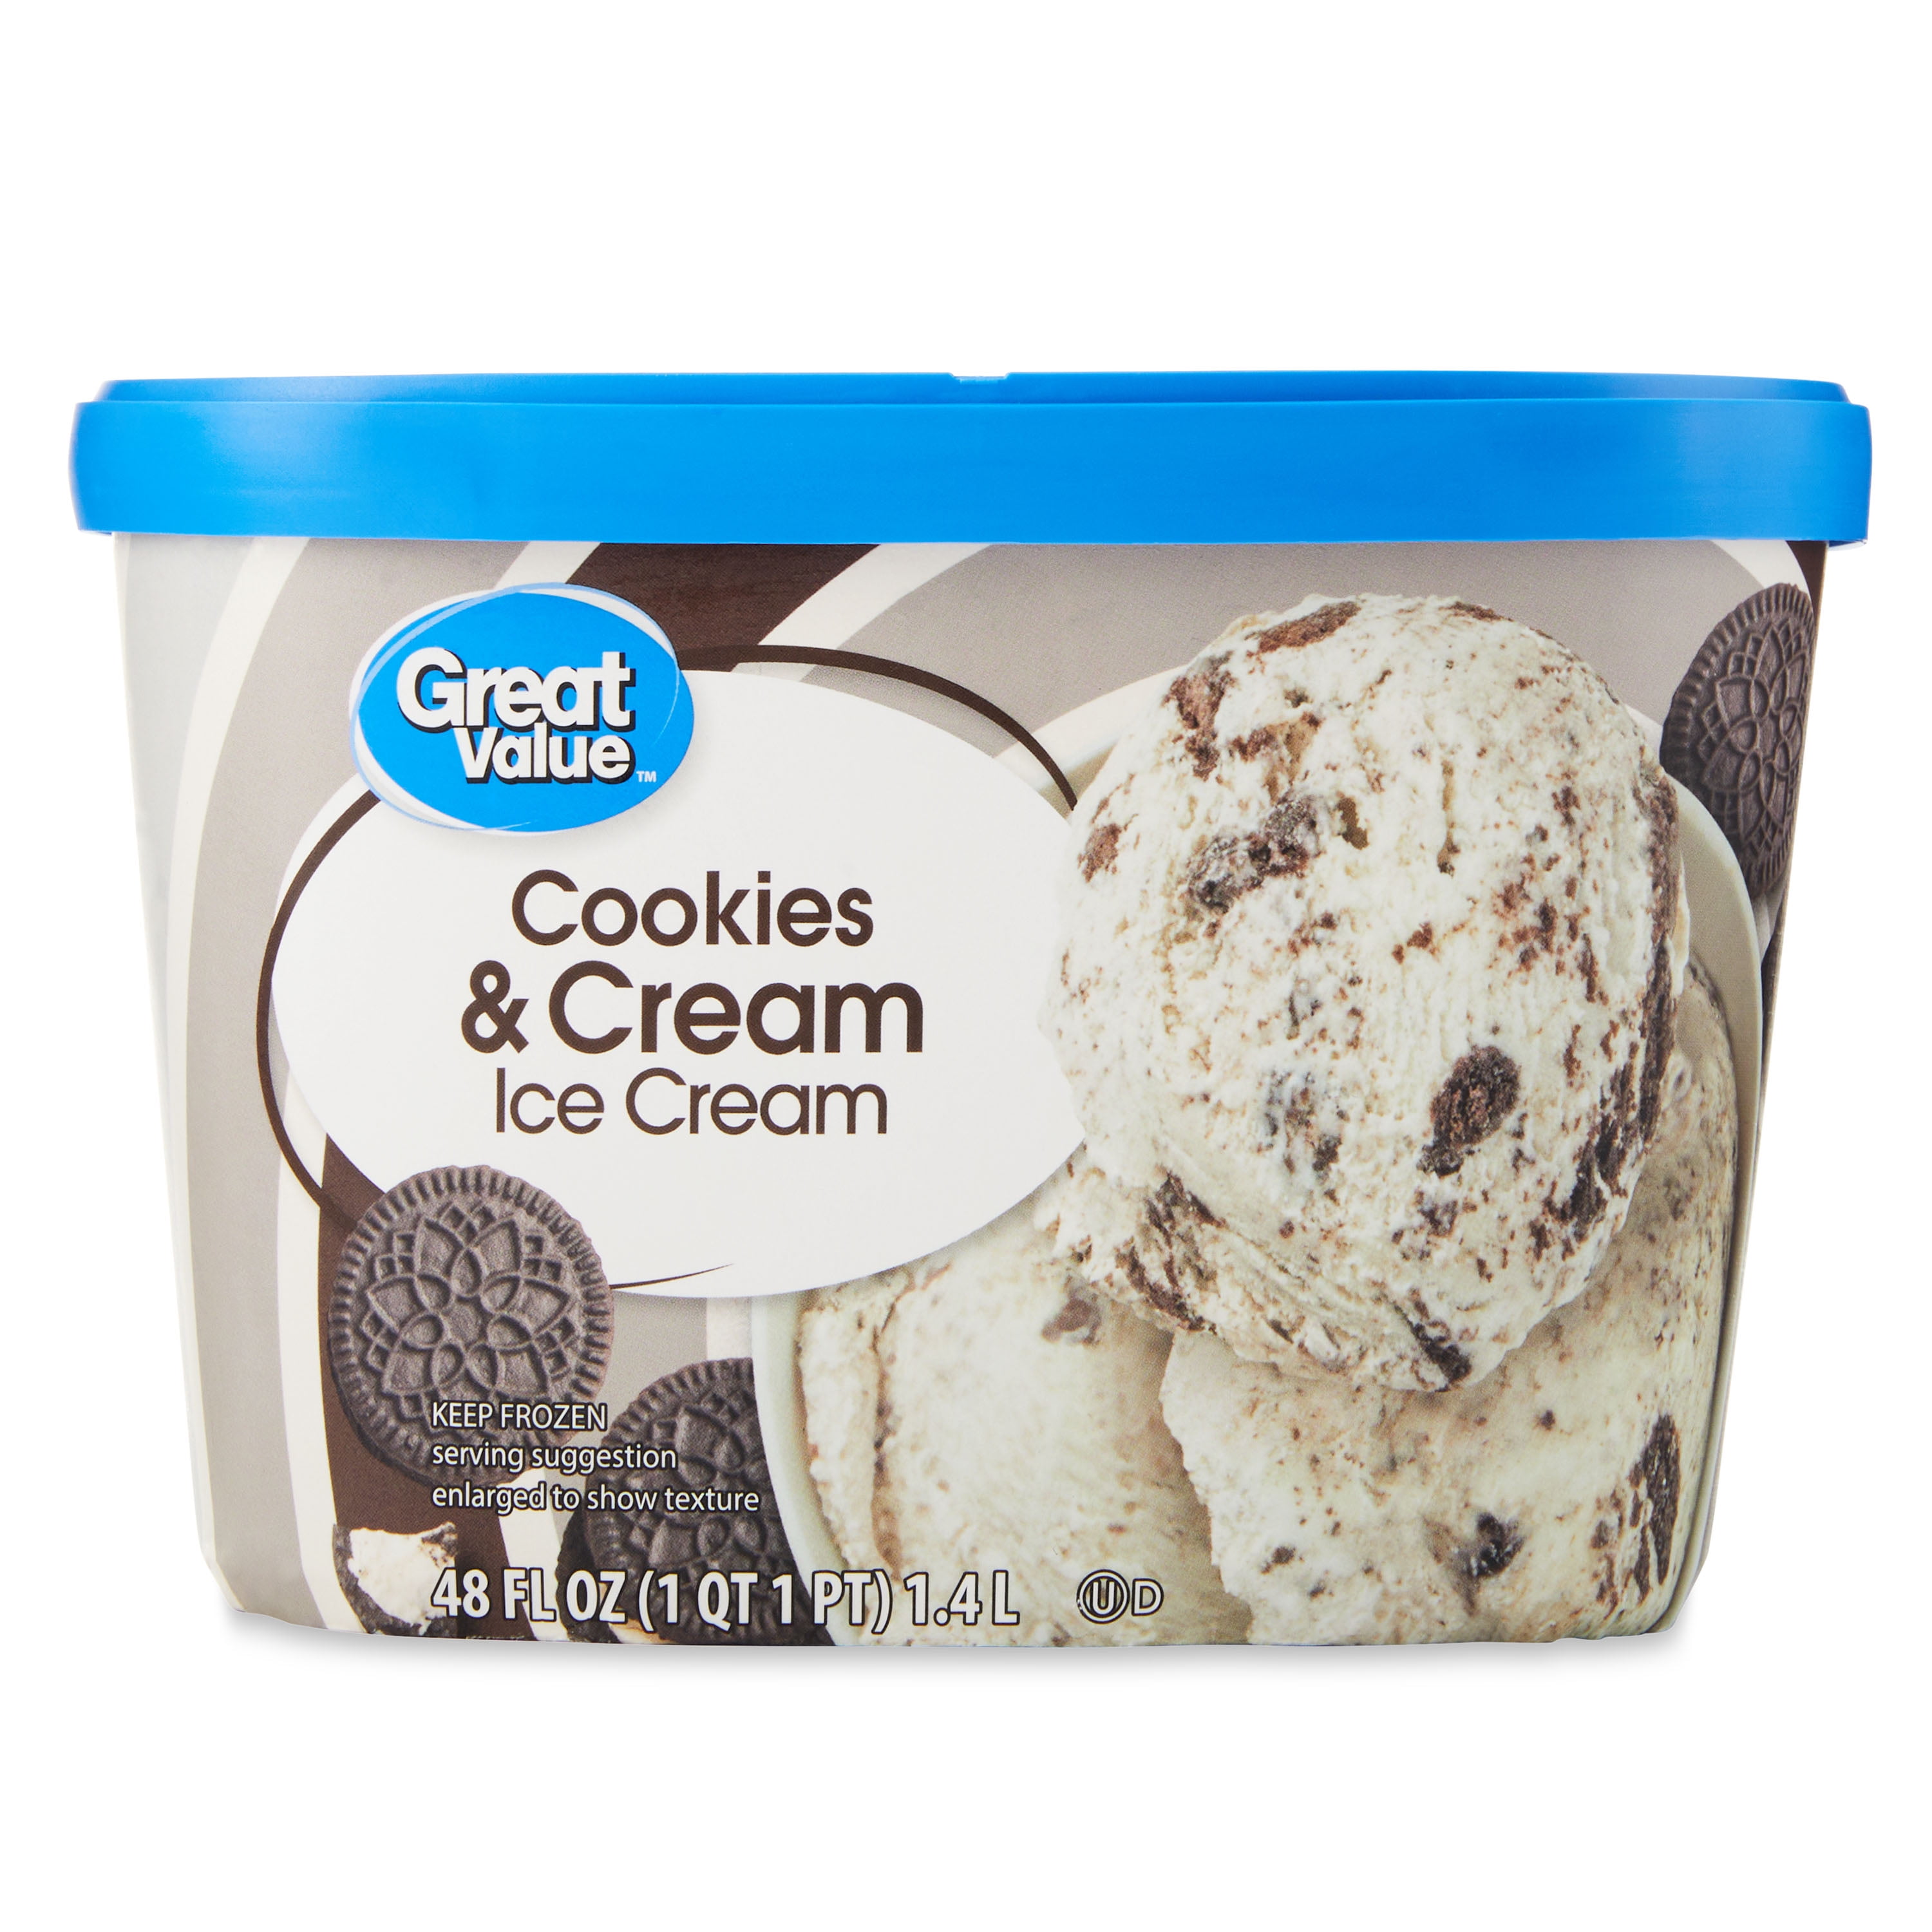 Great Value Cookies & Cream Ice Cream, 48 fl oz 